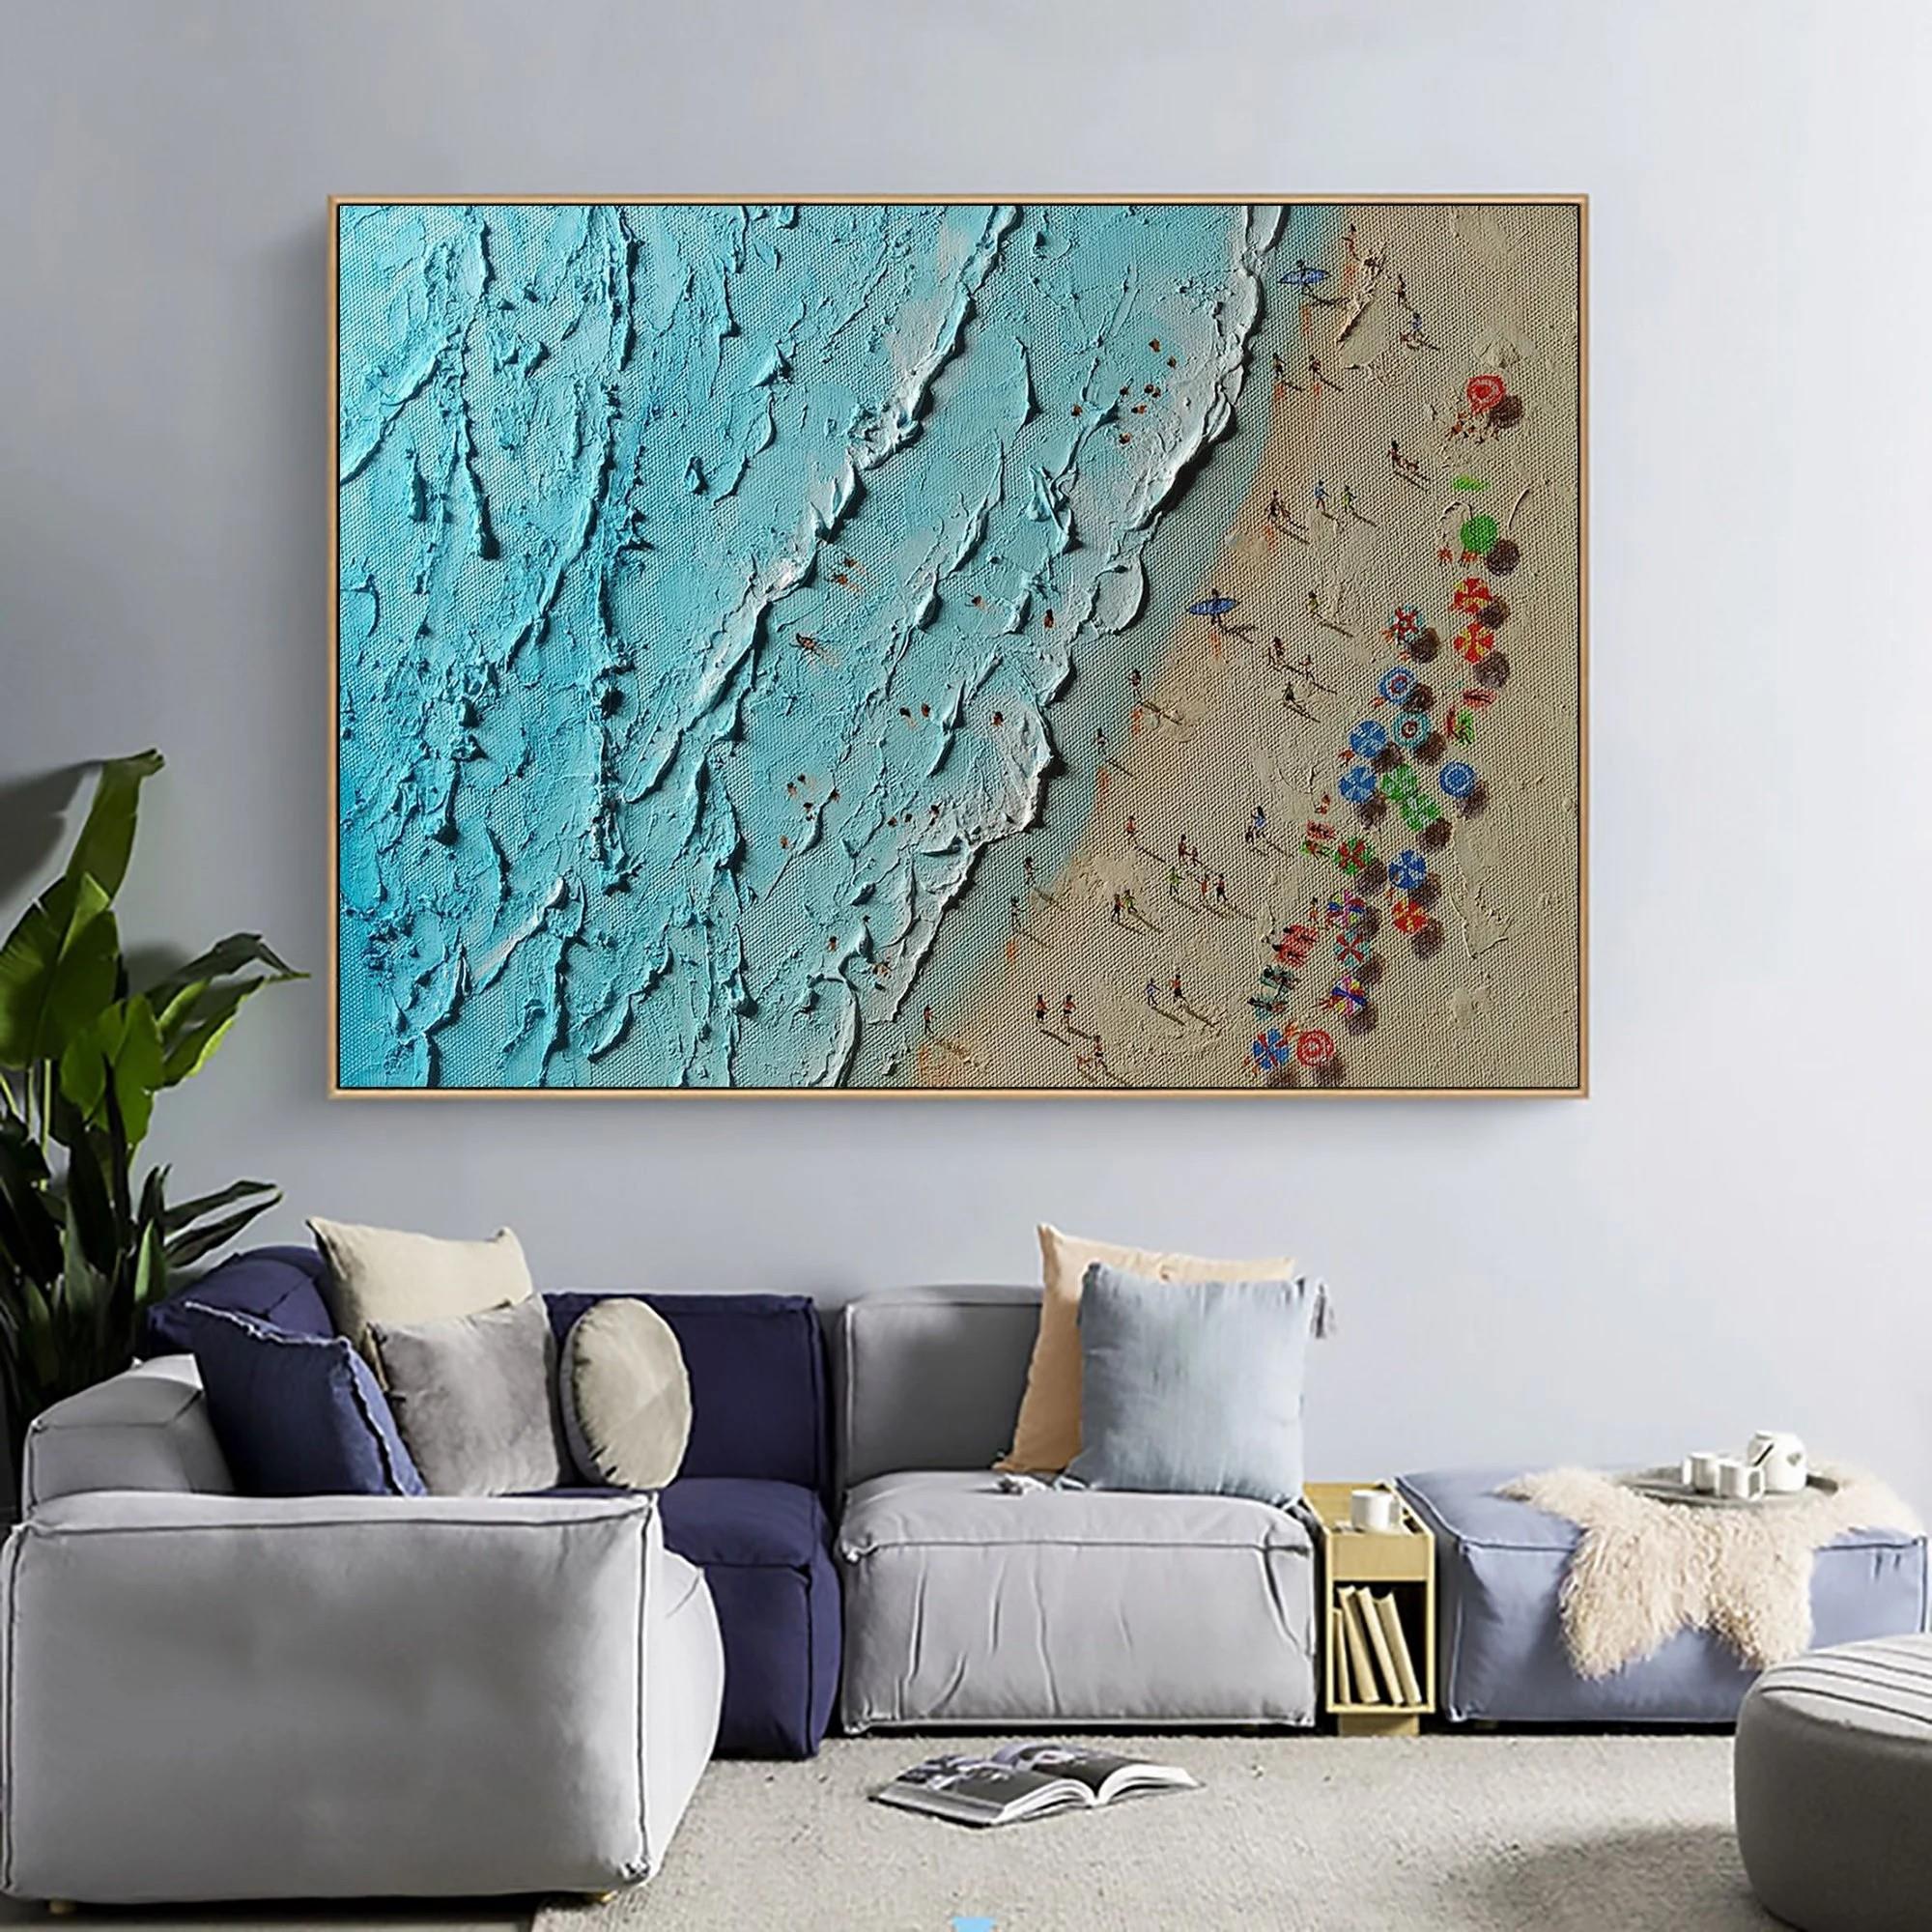 Summer Seaside waves by Palette Knife wall art minimalism Oil Paintings